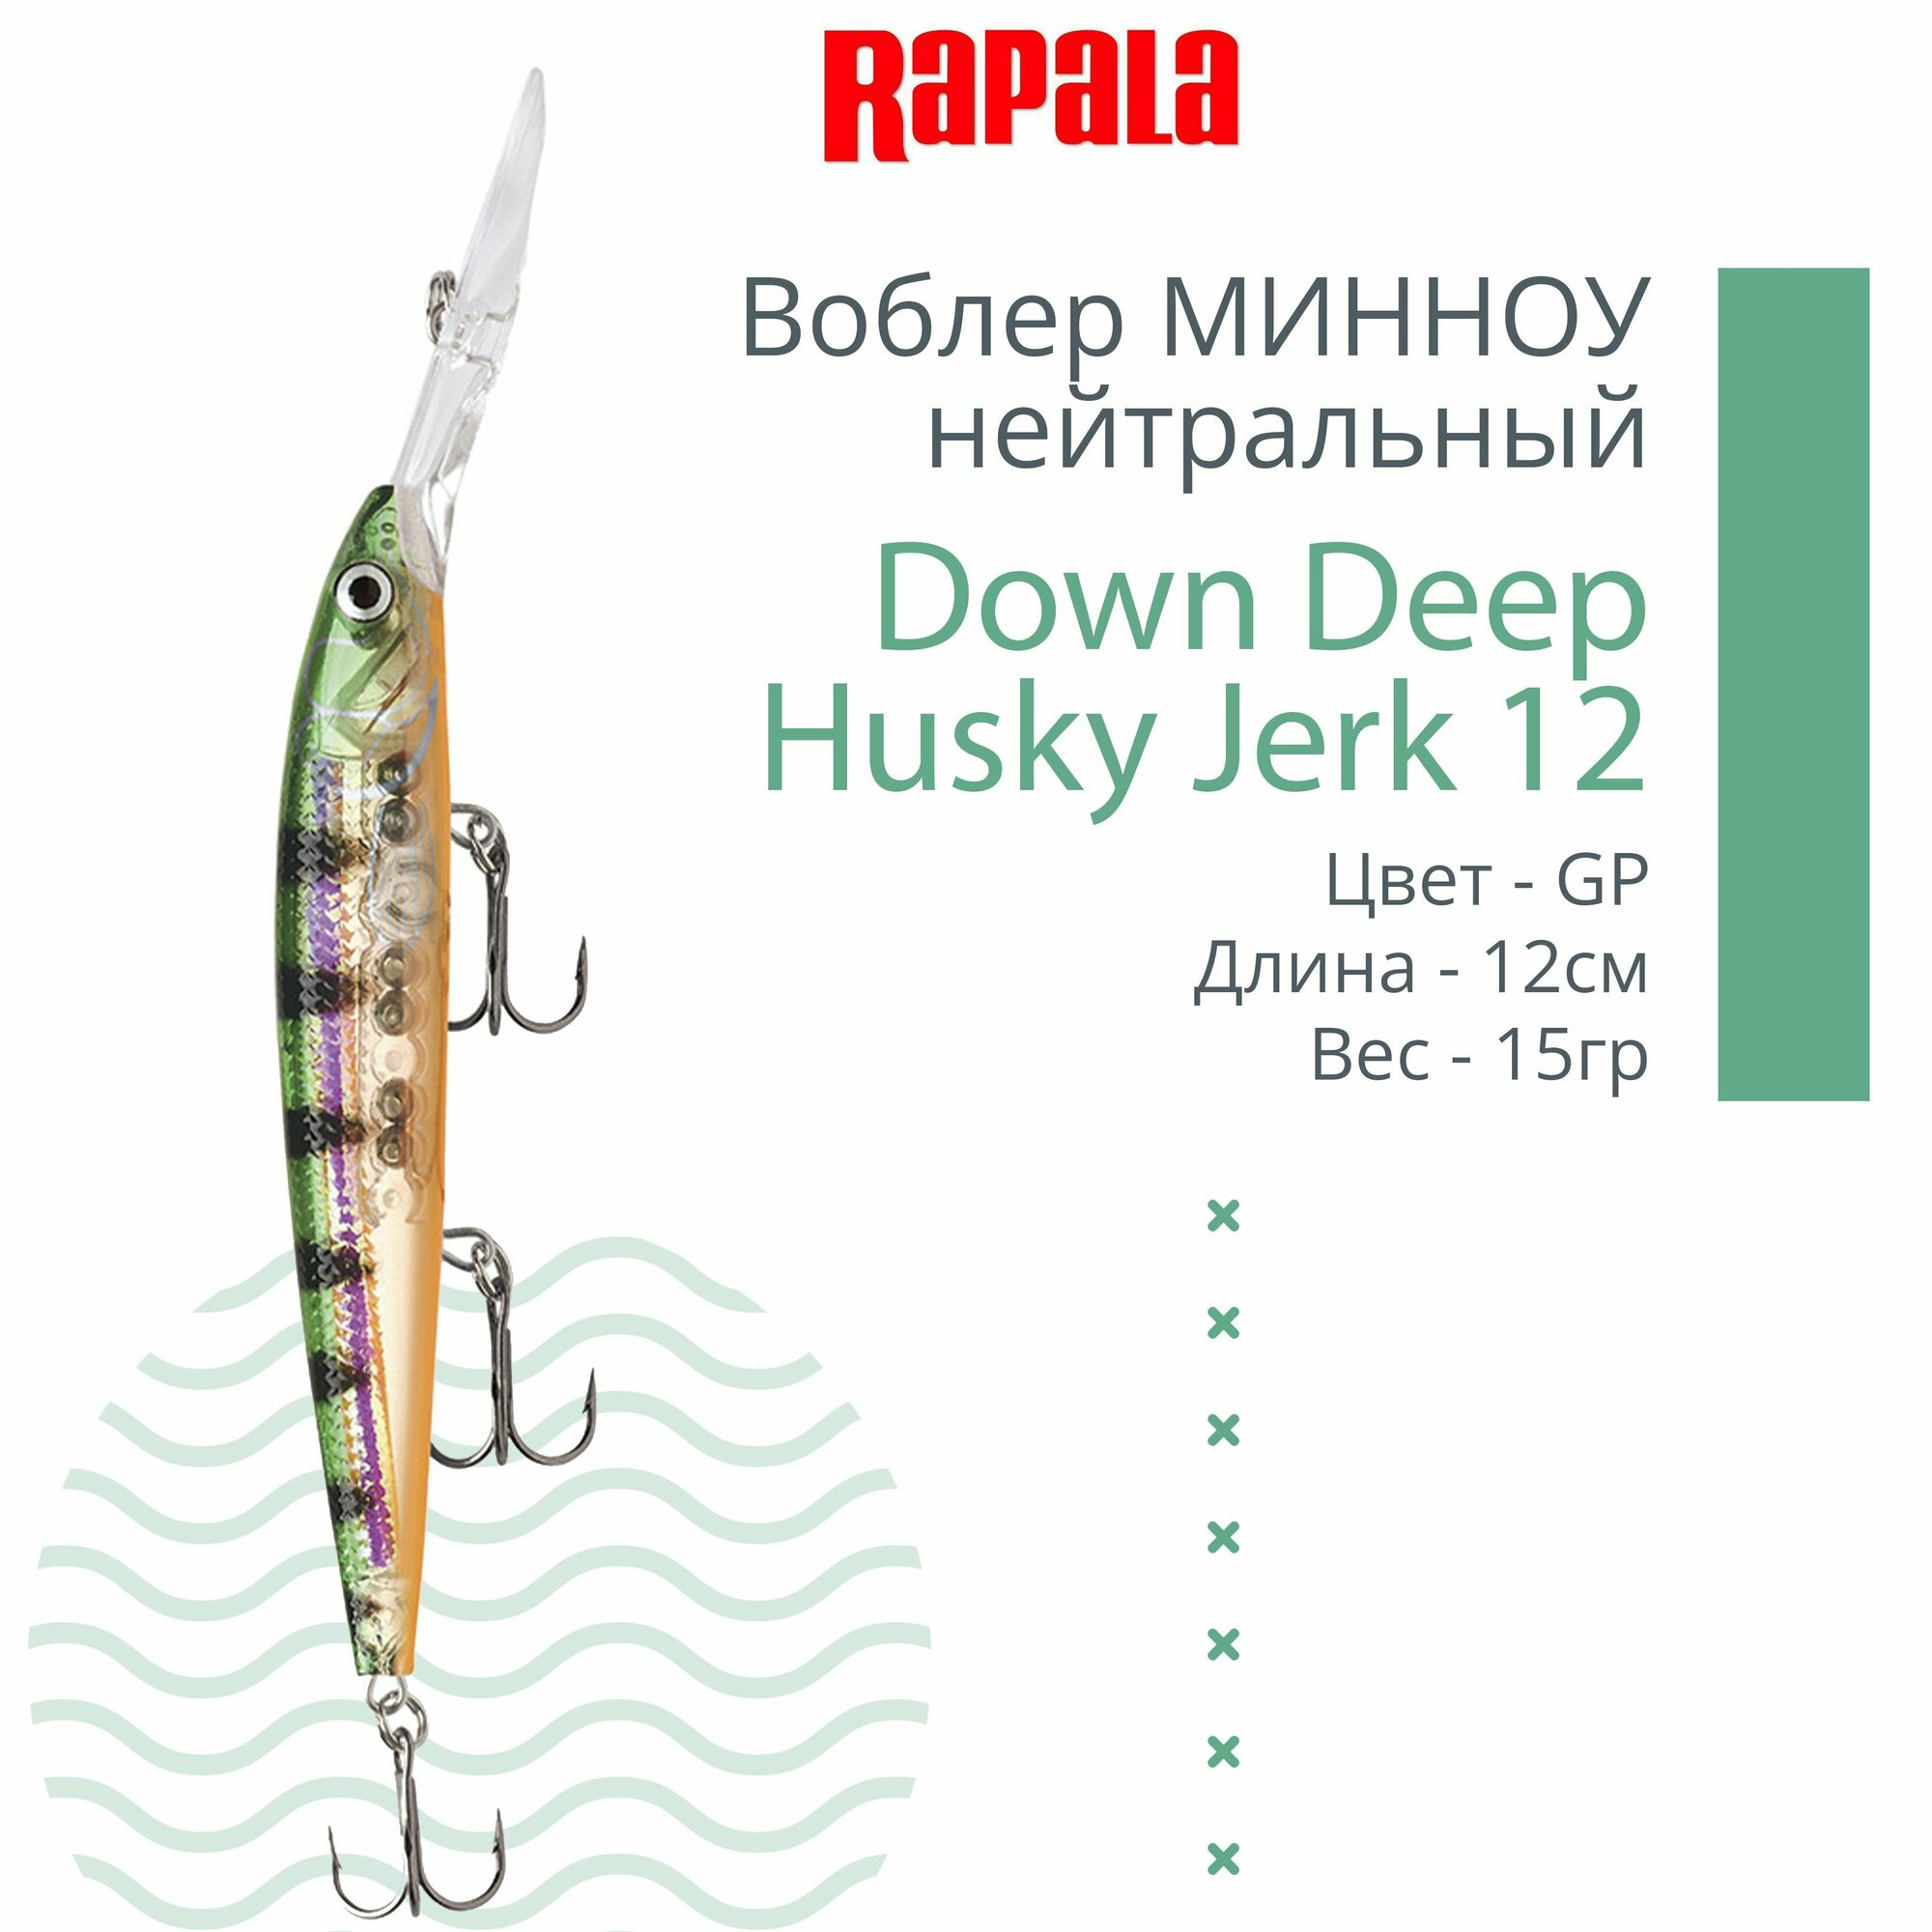 Воблер для рыбалки RAPALA Down Deep Husky Jerk 12, 12см, 15гр, цвет GP, нейтральный